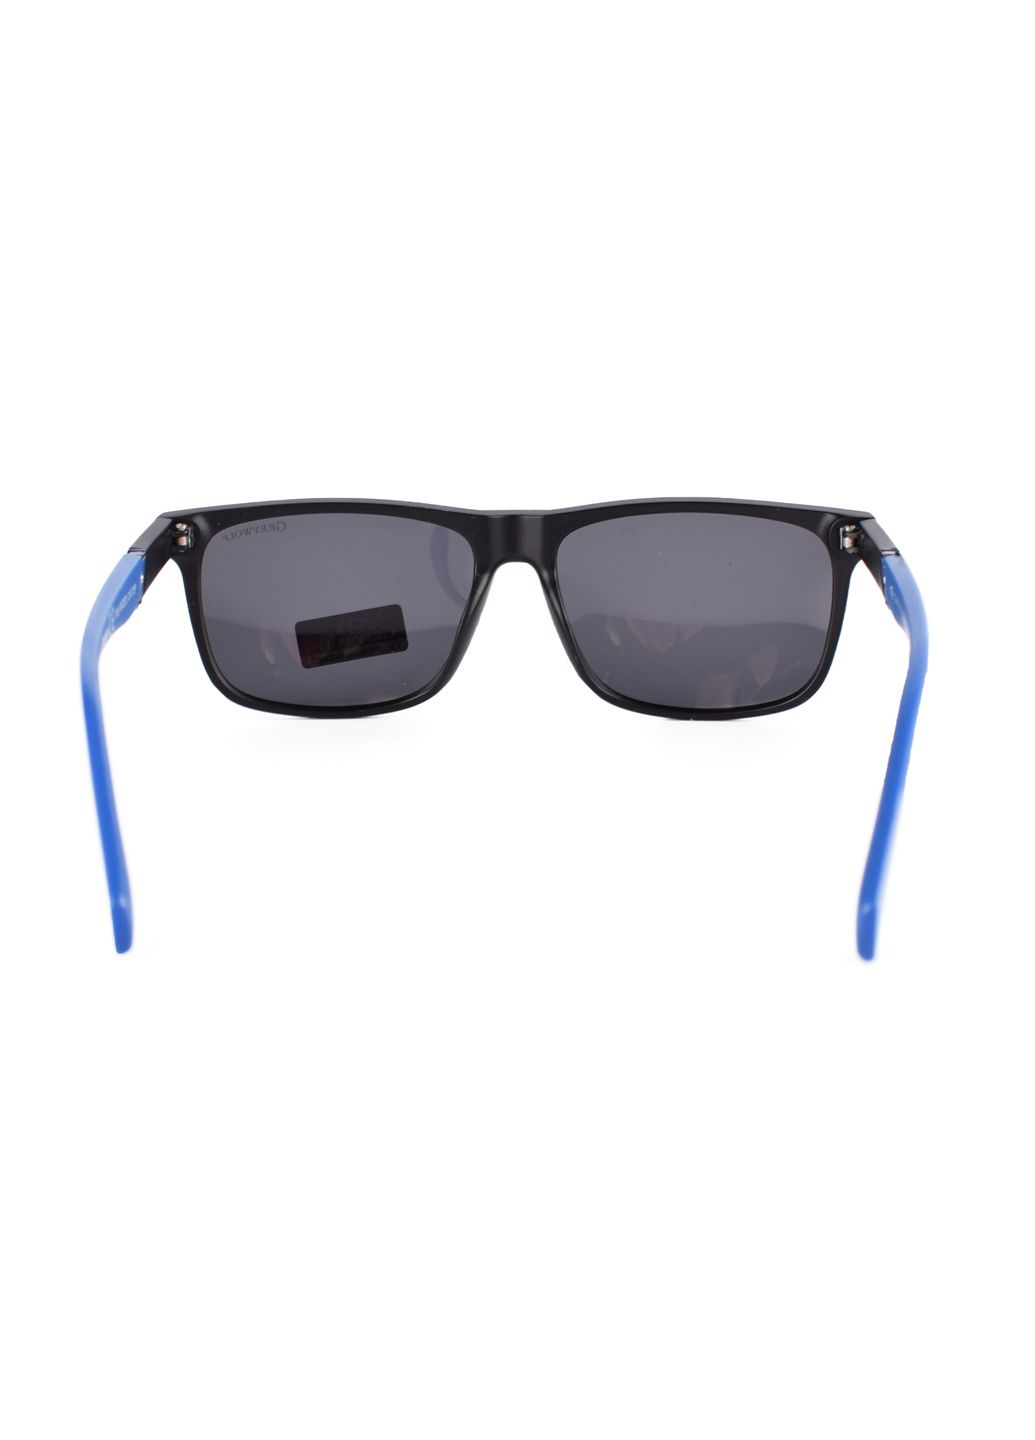 Купить Черные мужские солнцезащитные очки Gray Wolf с поряризацией GW5111 121011 в интернет-магазине